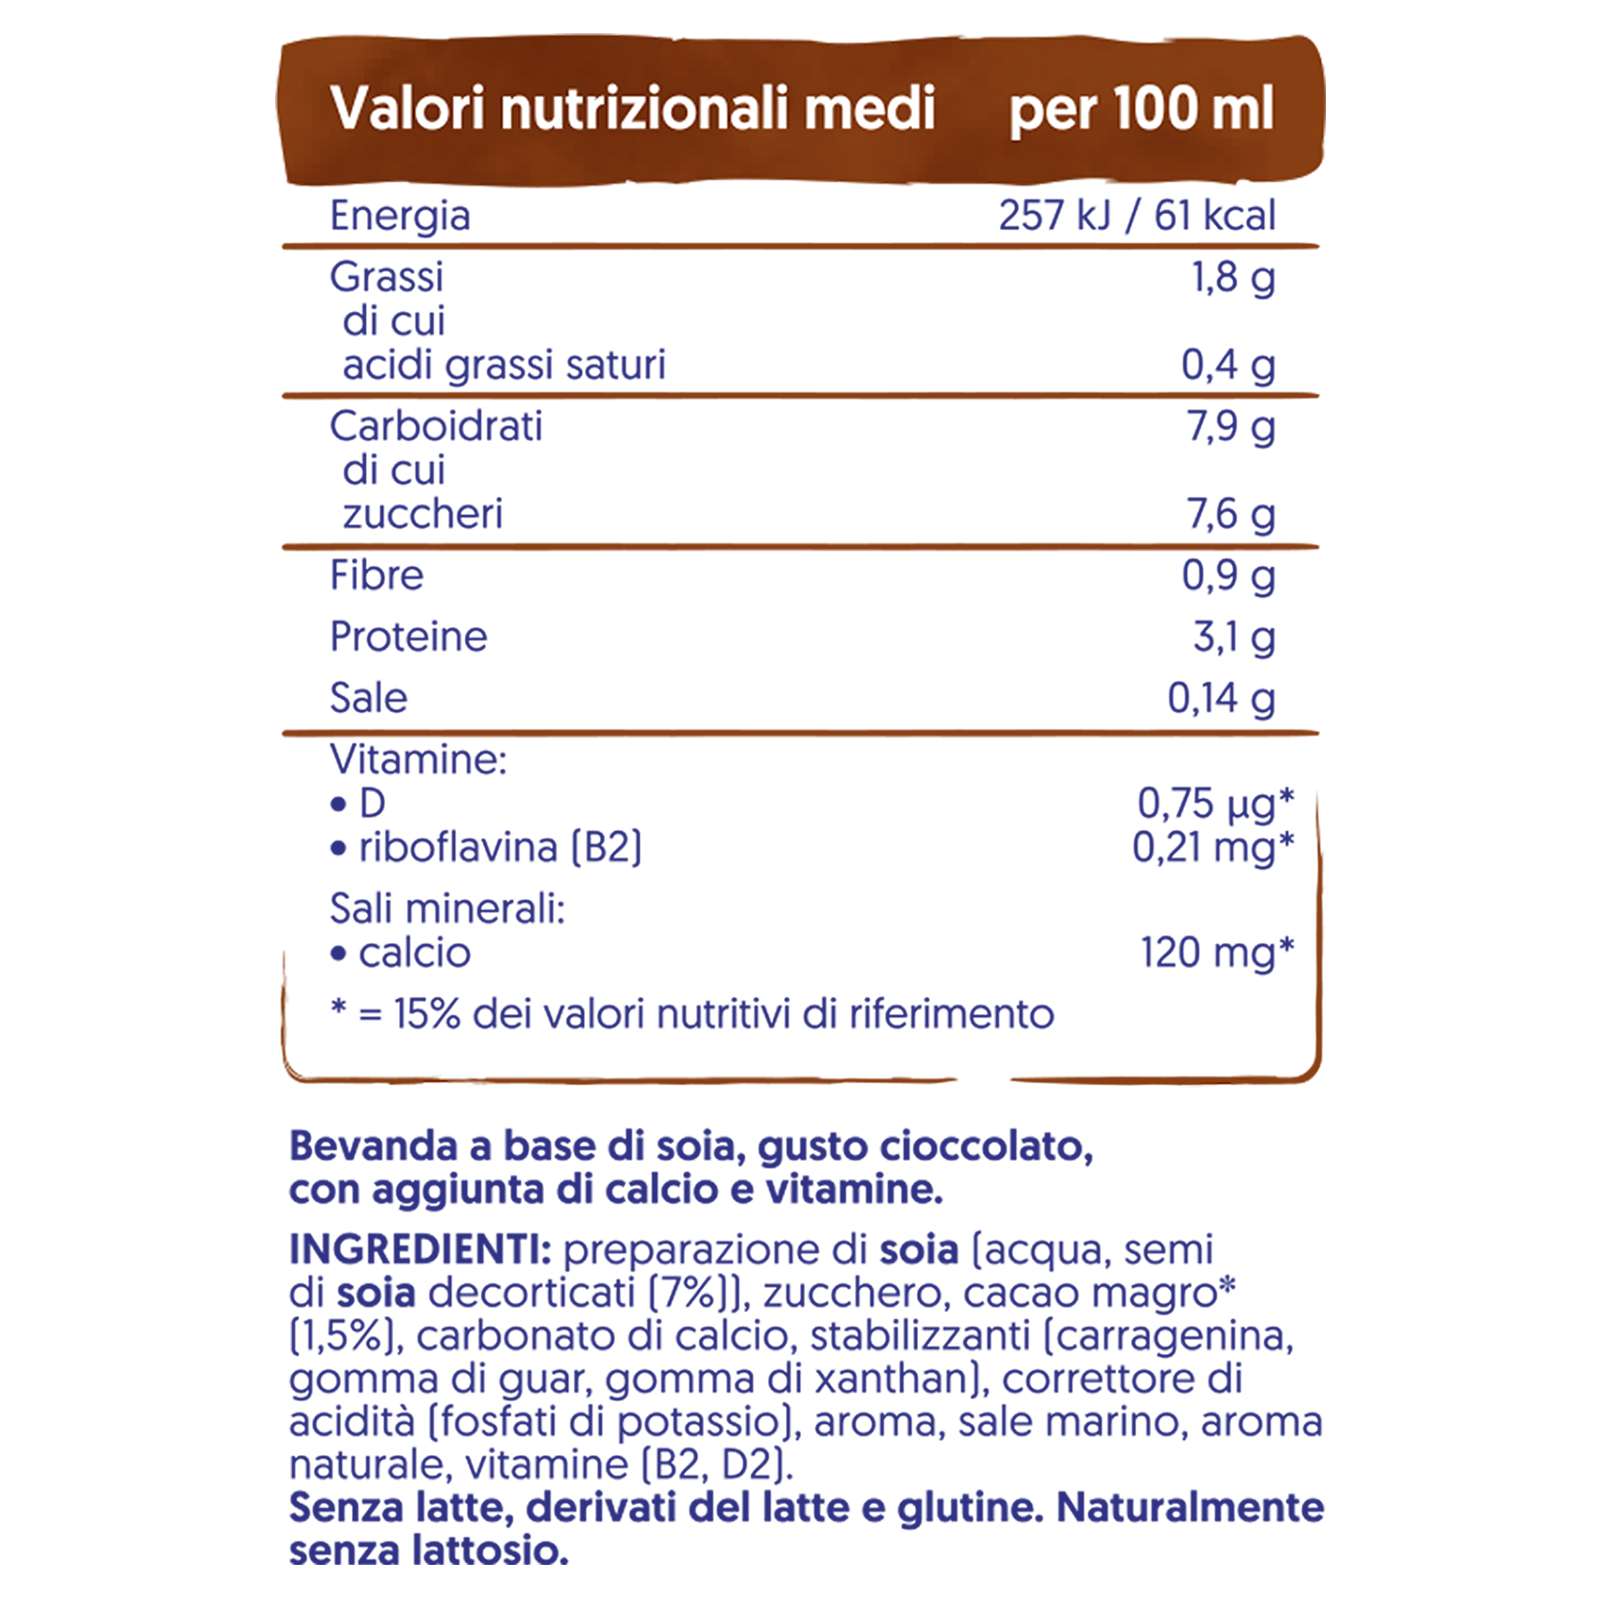 Latte di soia: valori nutrizionali e caratteristiche